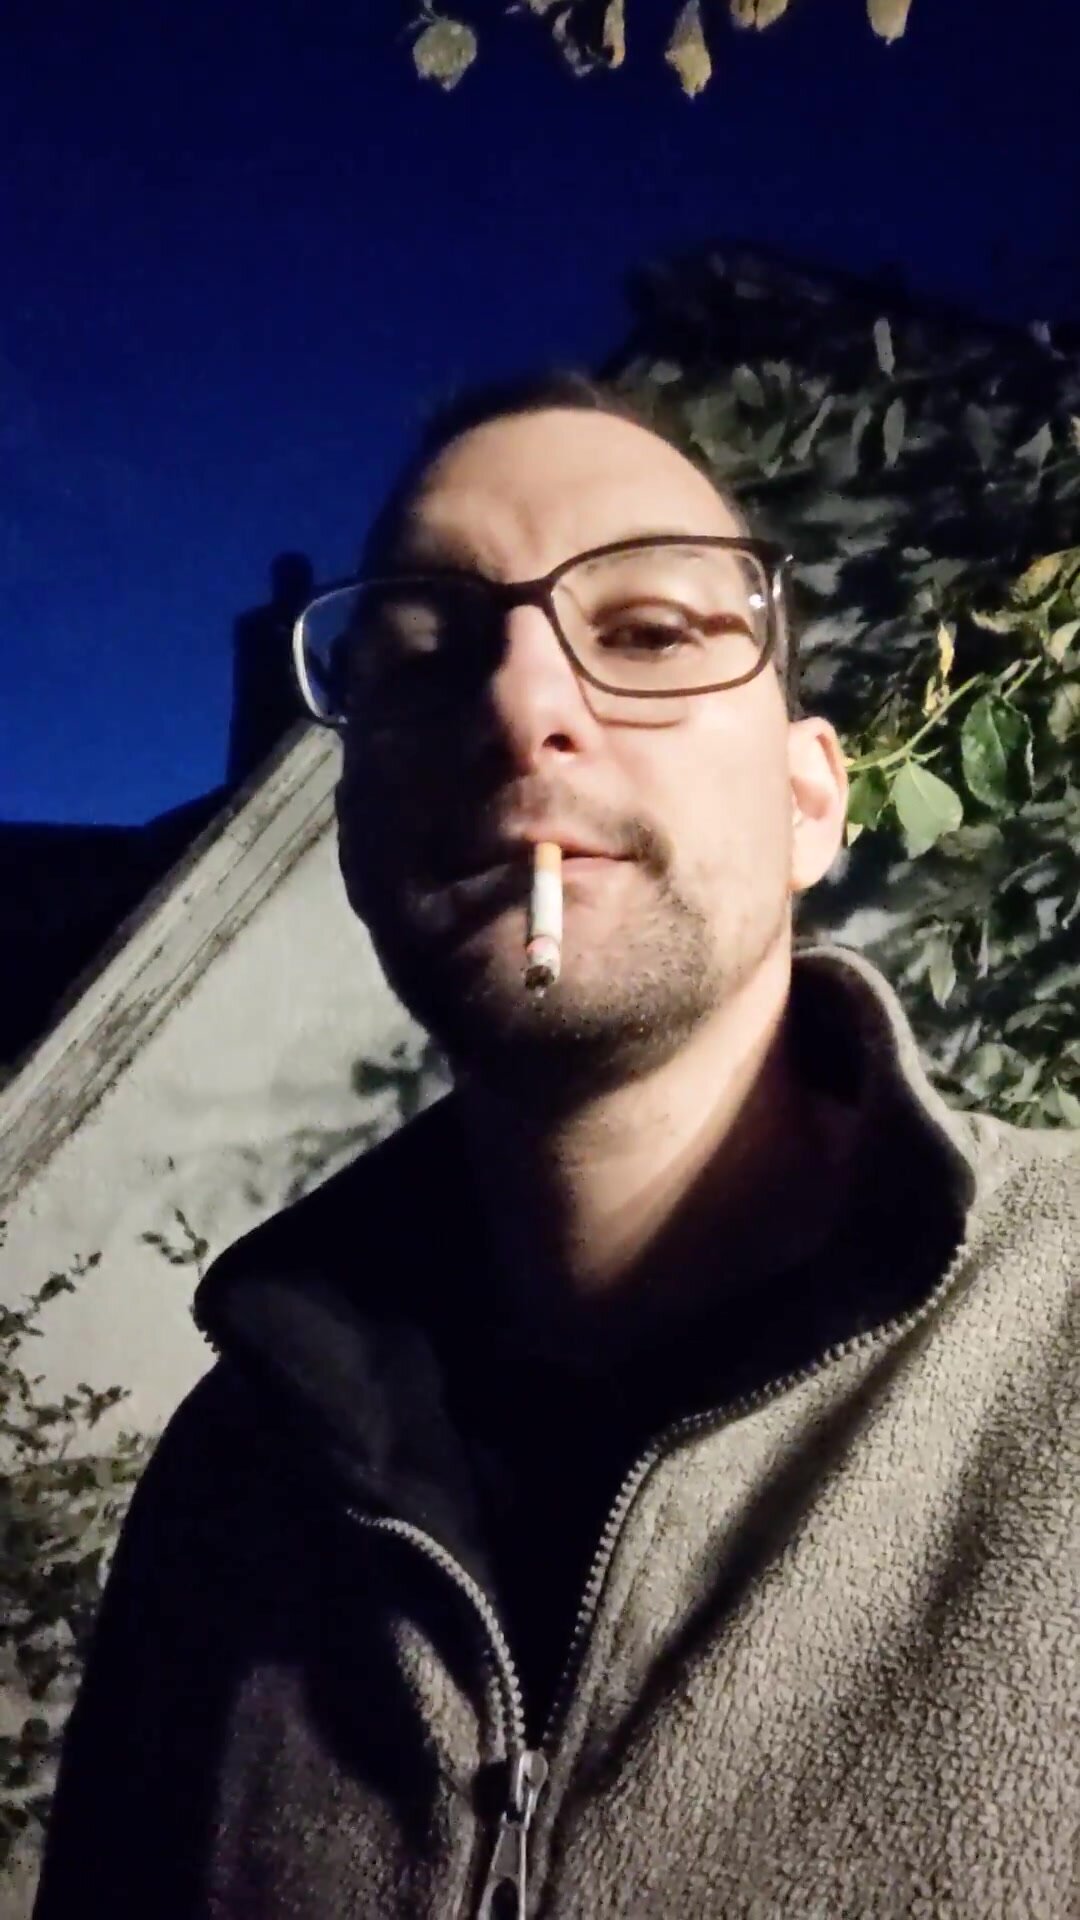 More smoking at night - video 2